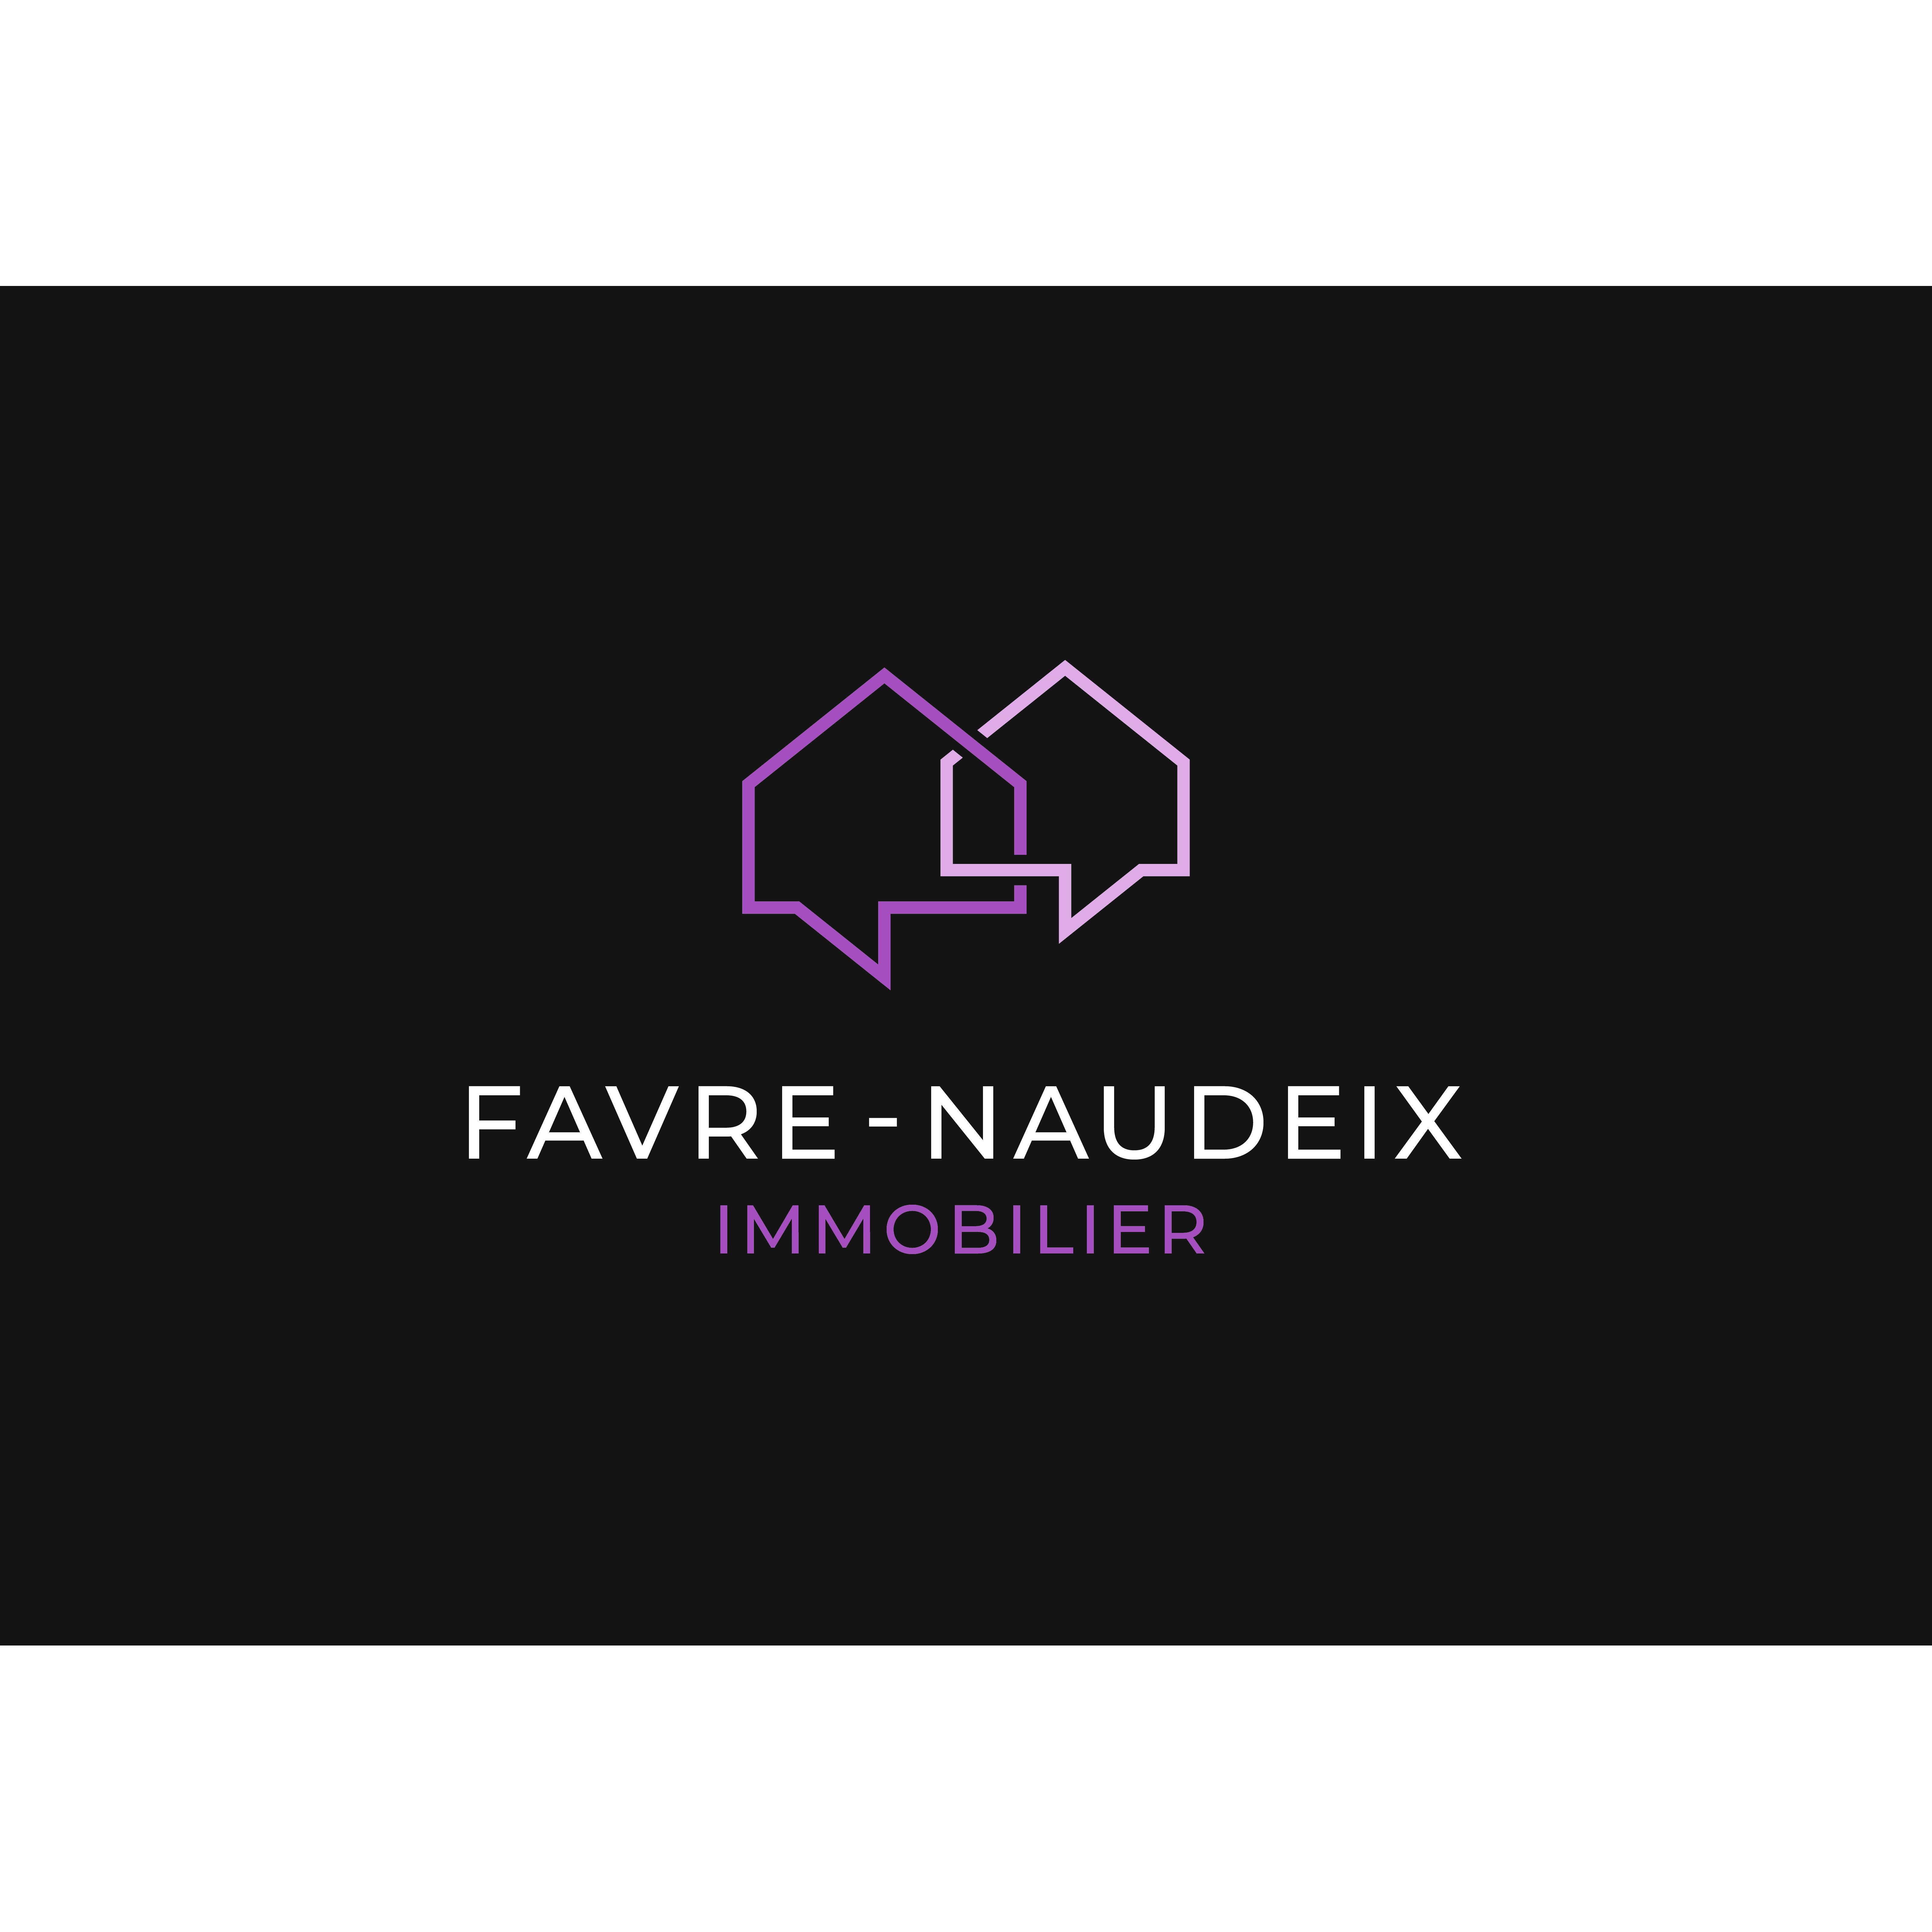 Favre - Naudeix immobilier Logo